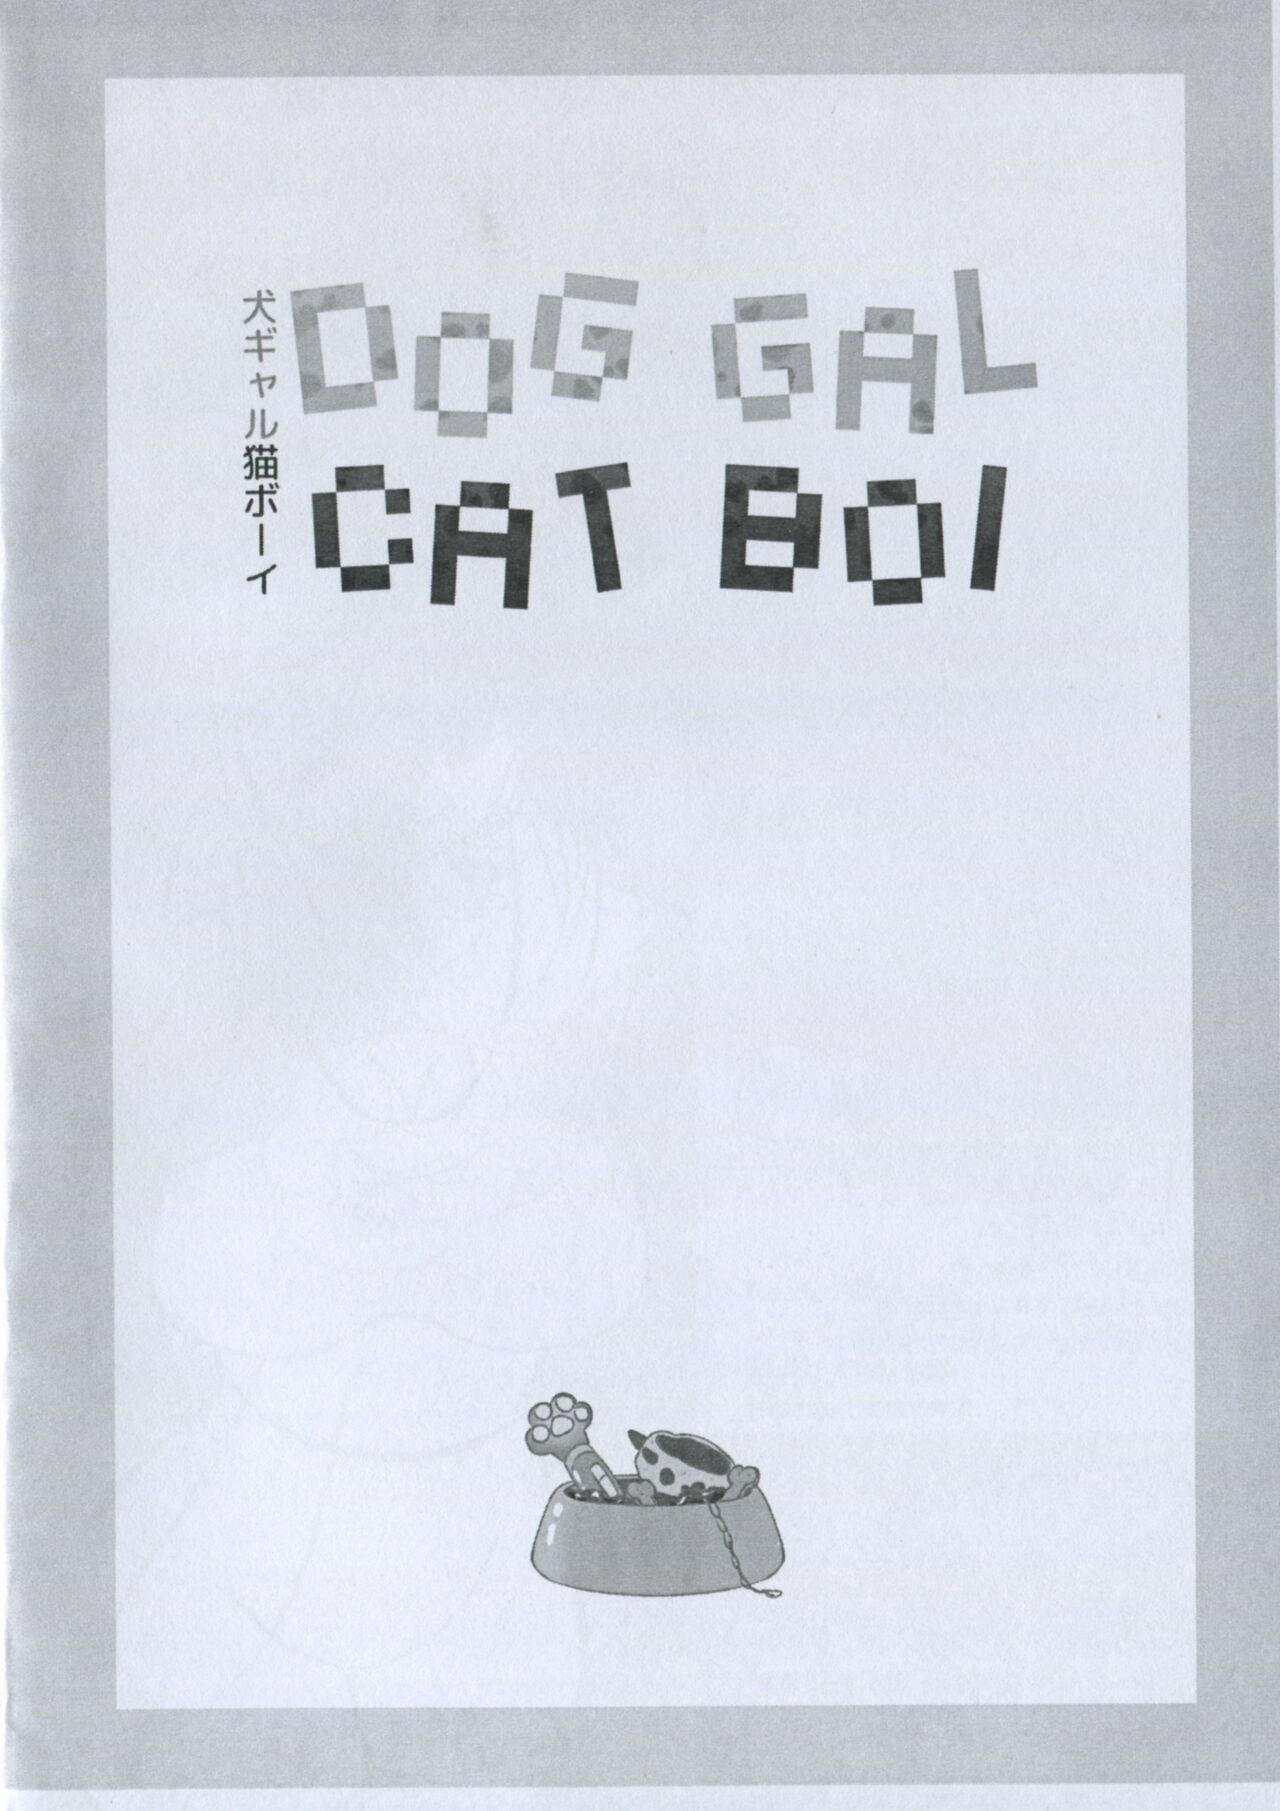 De Quatro Dog Gal Cat Boi - 犬ガール猫ボーイ - Original 18yearsold - Picture 3